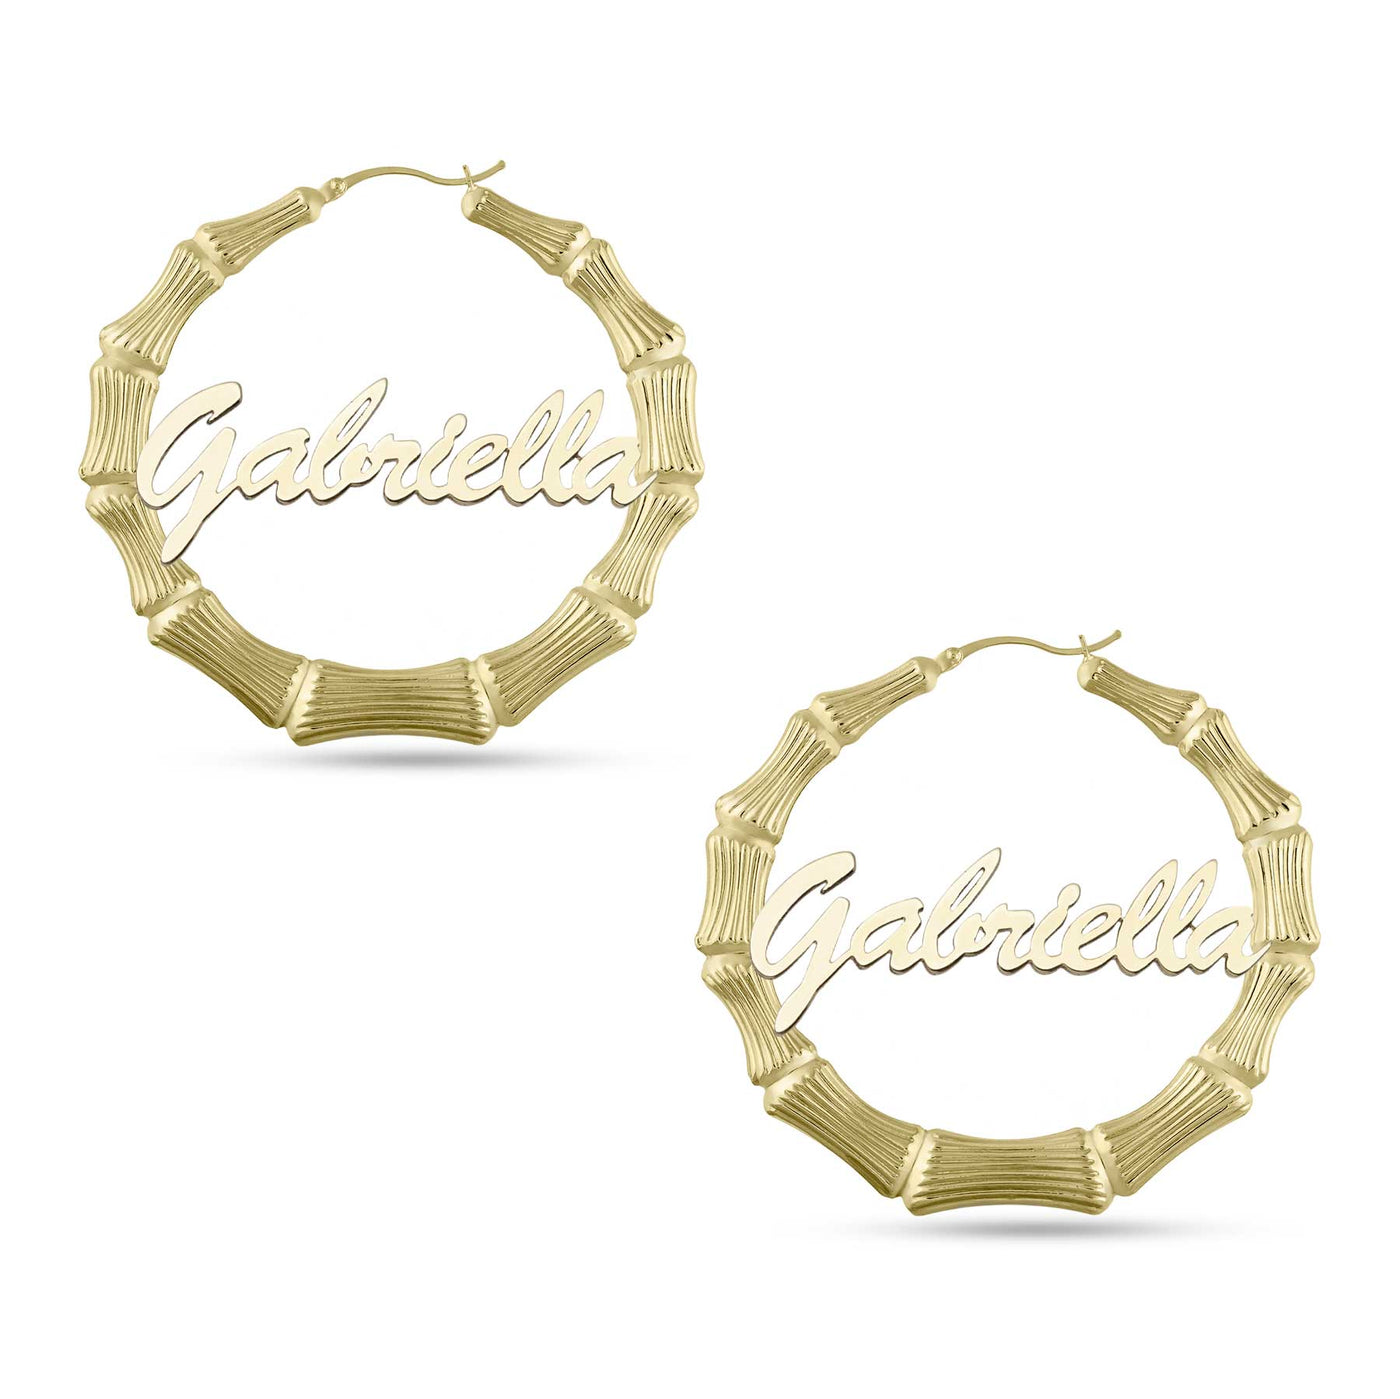 Ladies Script Name Plate Bamboo Hoop Earrings 14K Gold - Style 1